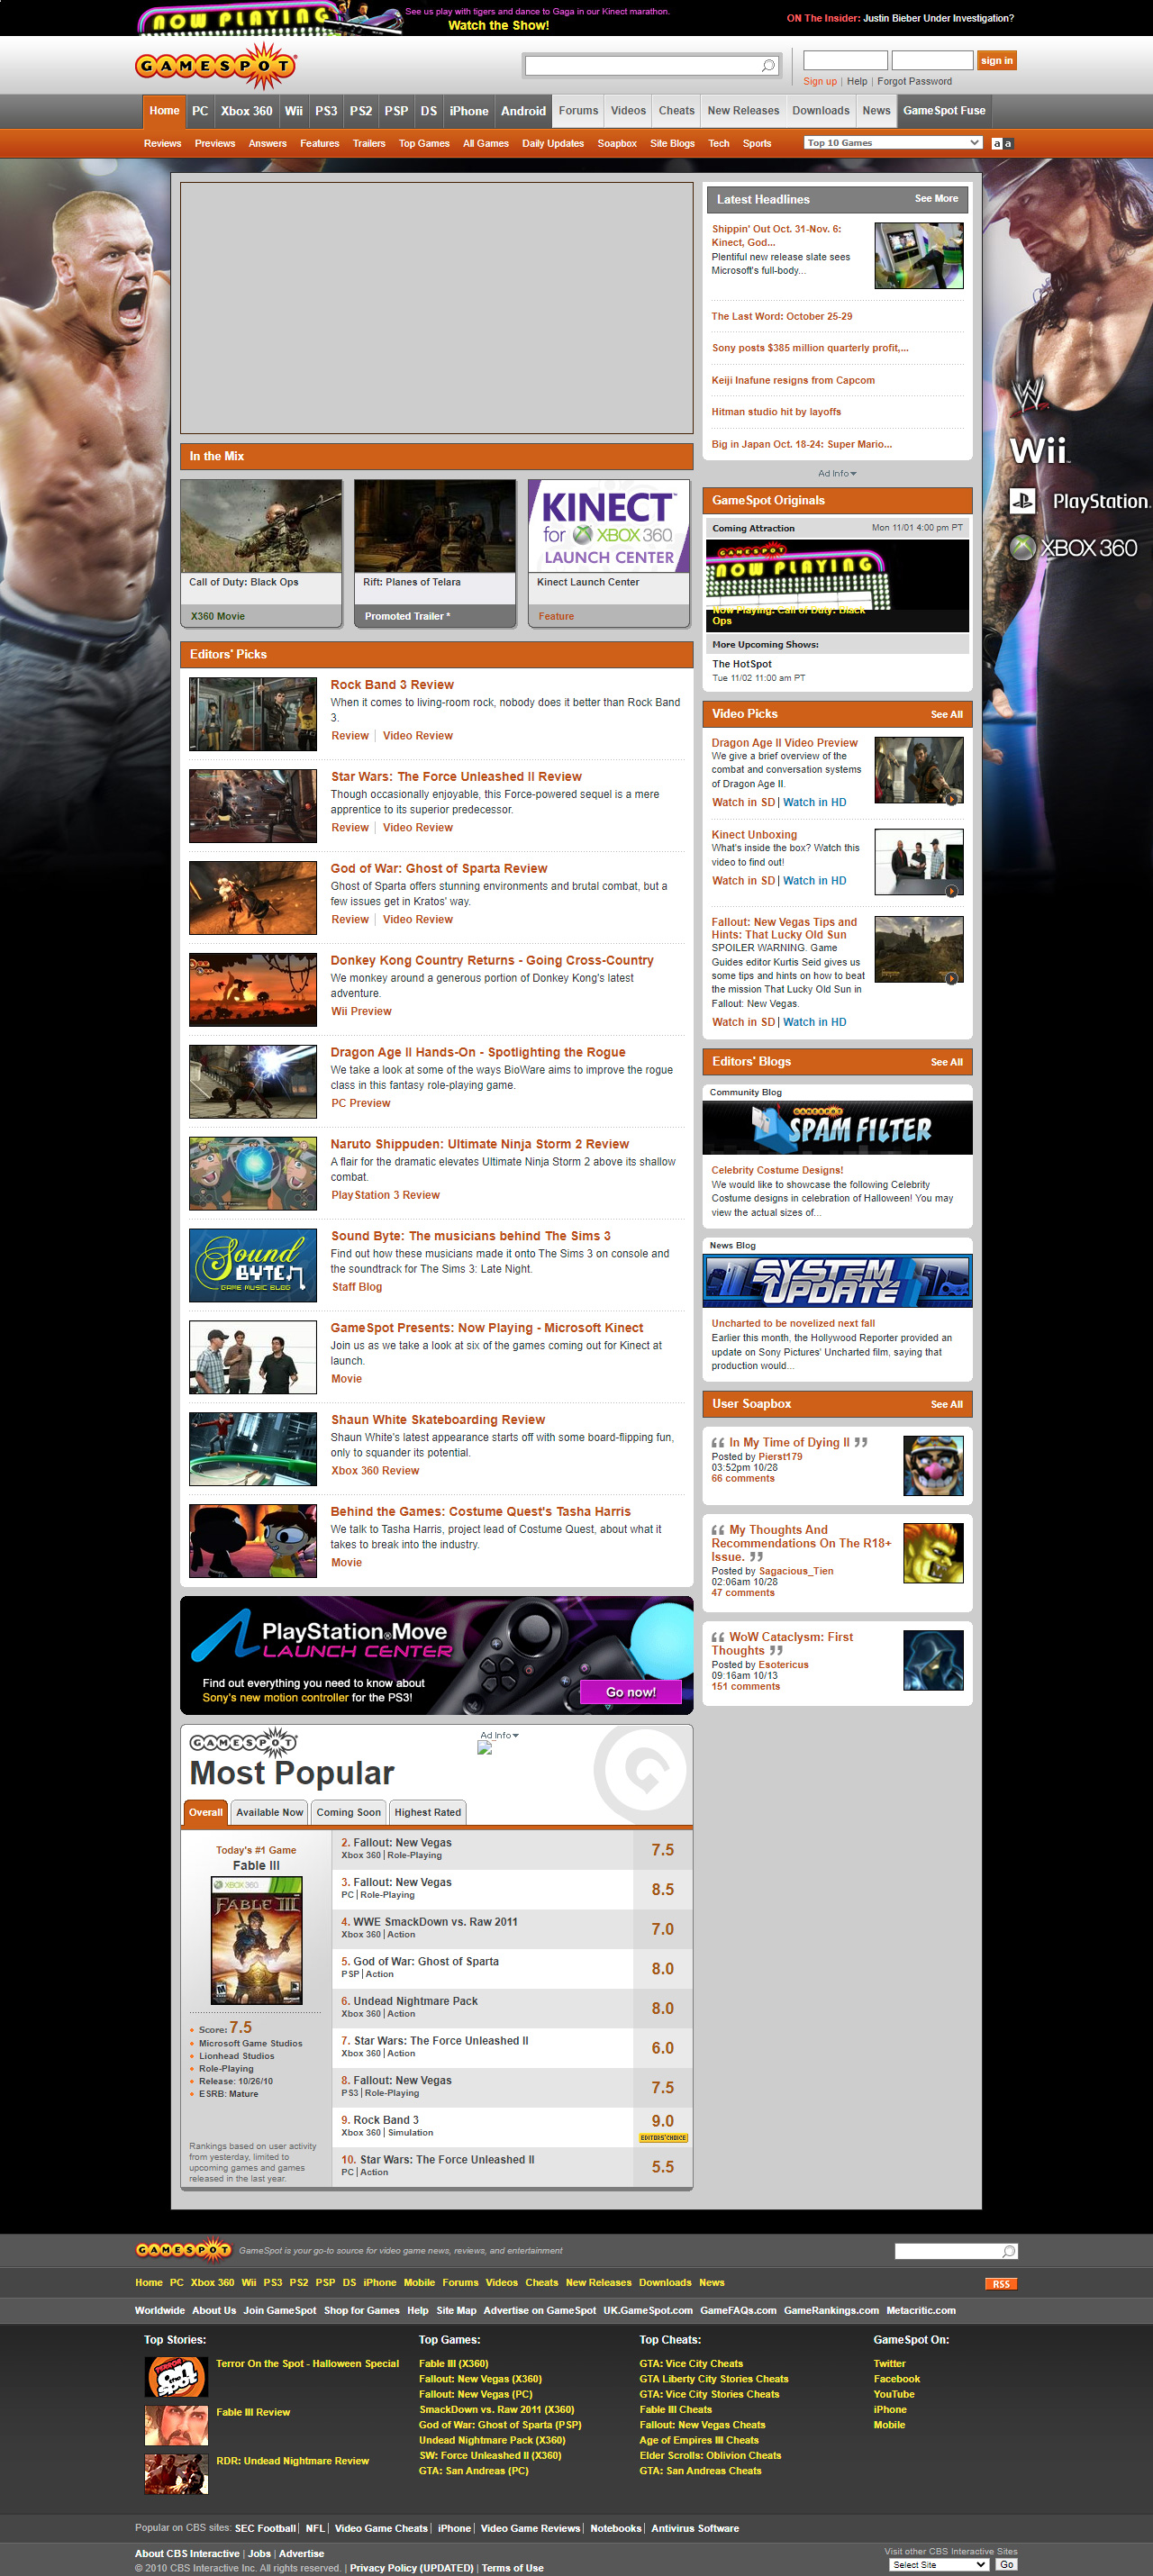 GameSpot website in 2010